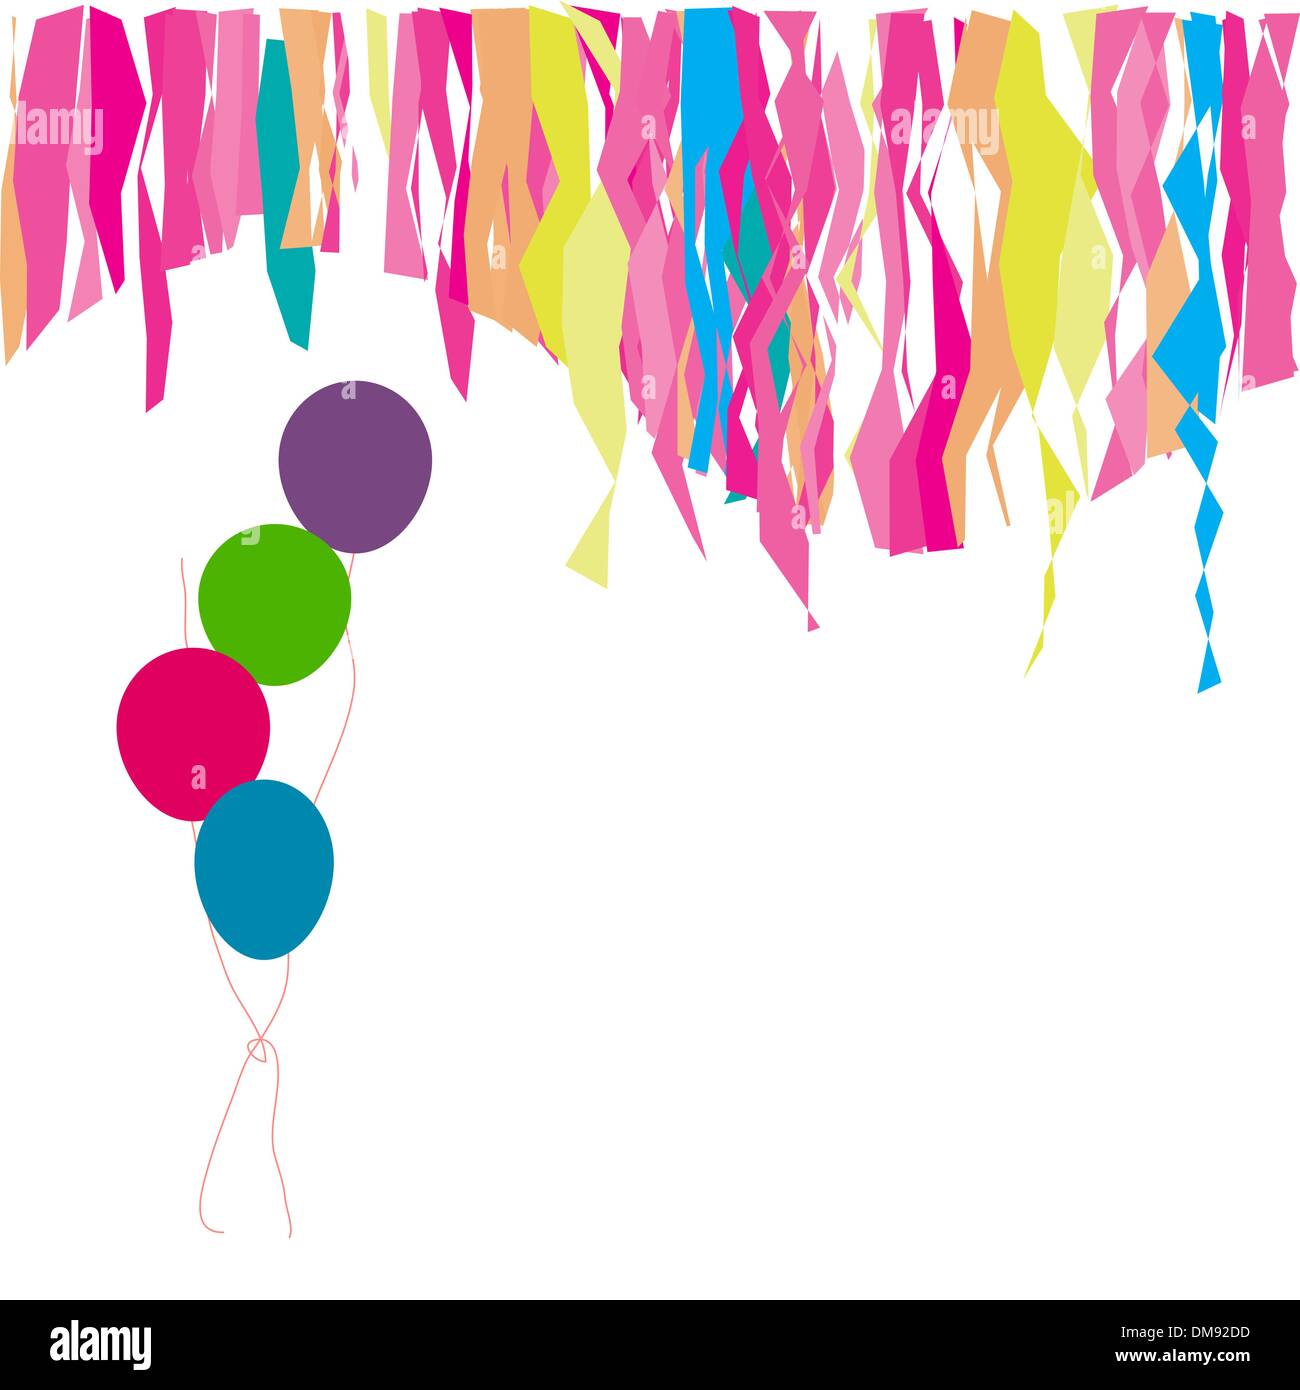 Herzlichen Glückwunsch zum Geburtstag! Luftballons und Konfetti. Fügen Sie hier Ihren Text ein. Stock Vektor